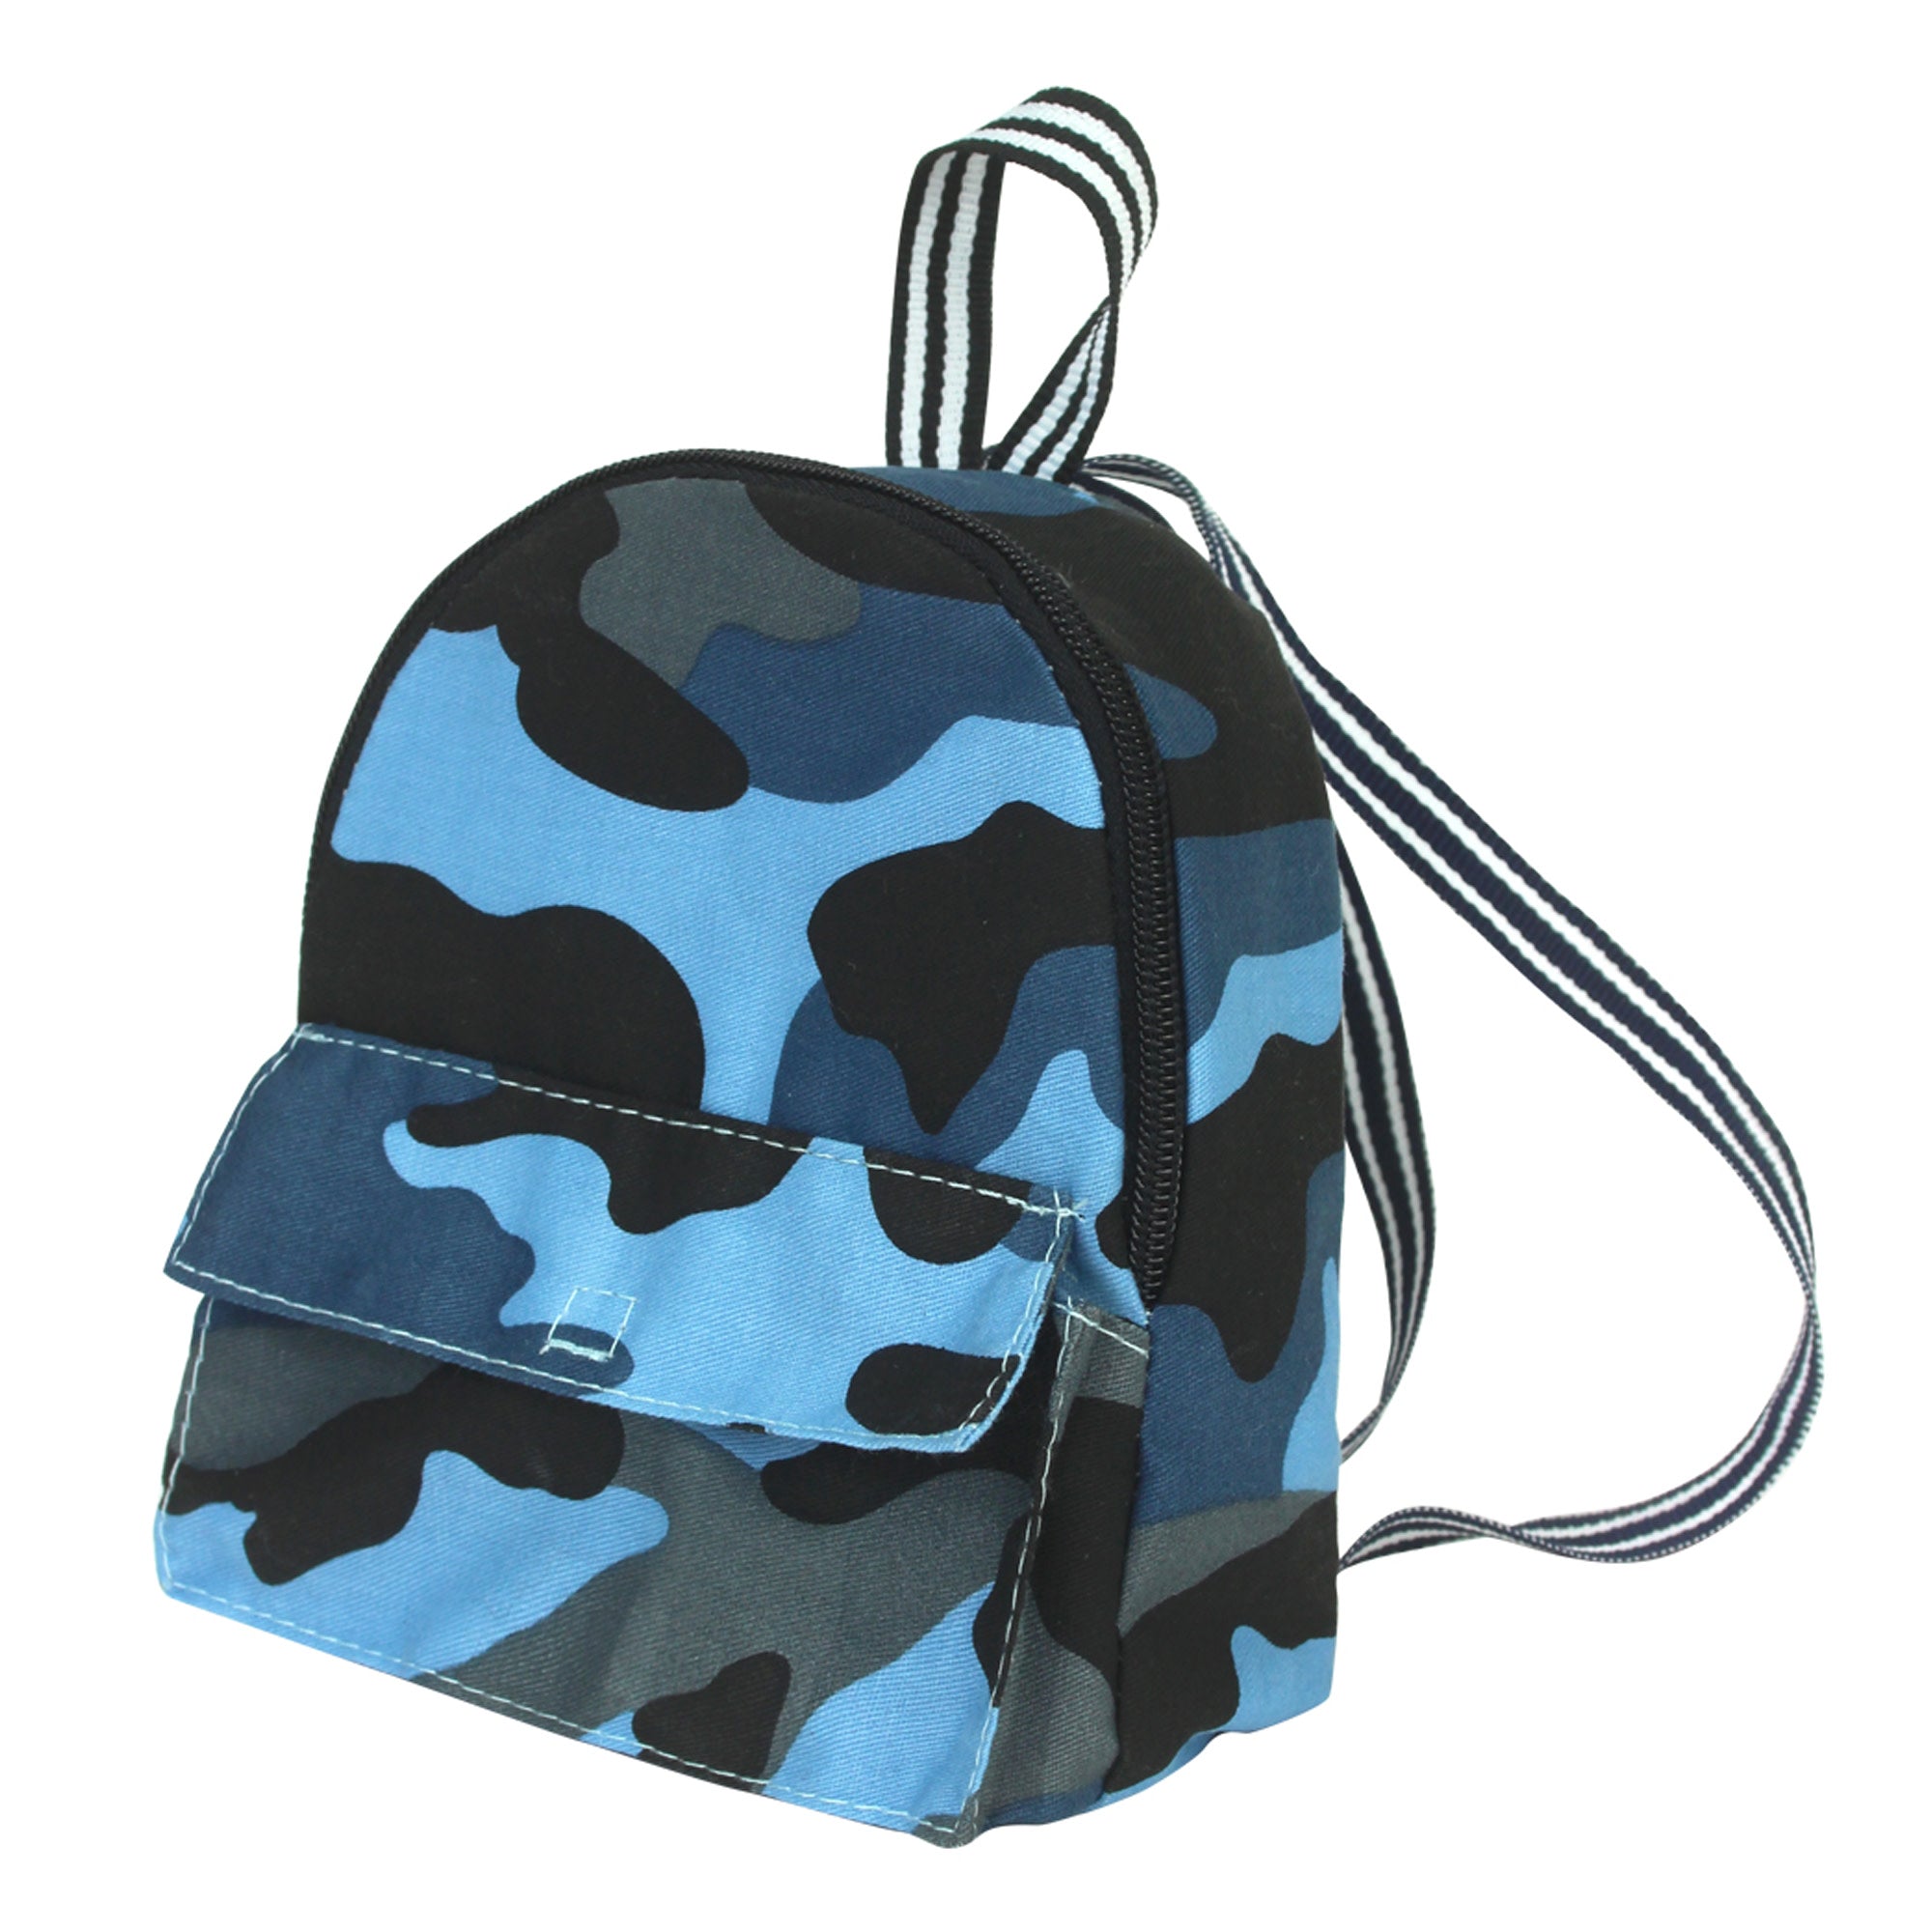 Sophia's Camouflage Nylon Backpack for 18" Dolls, Blue